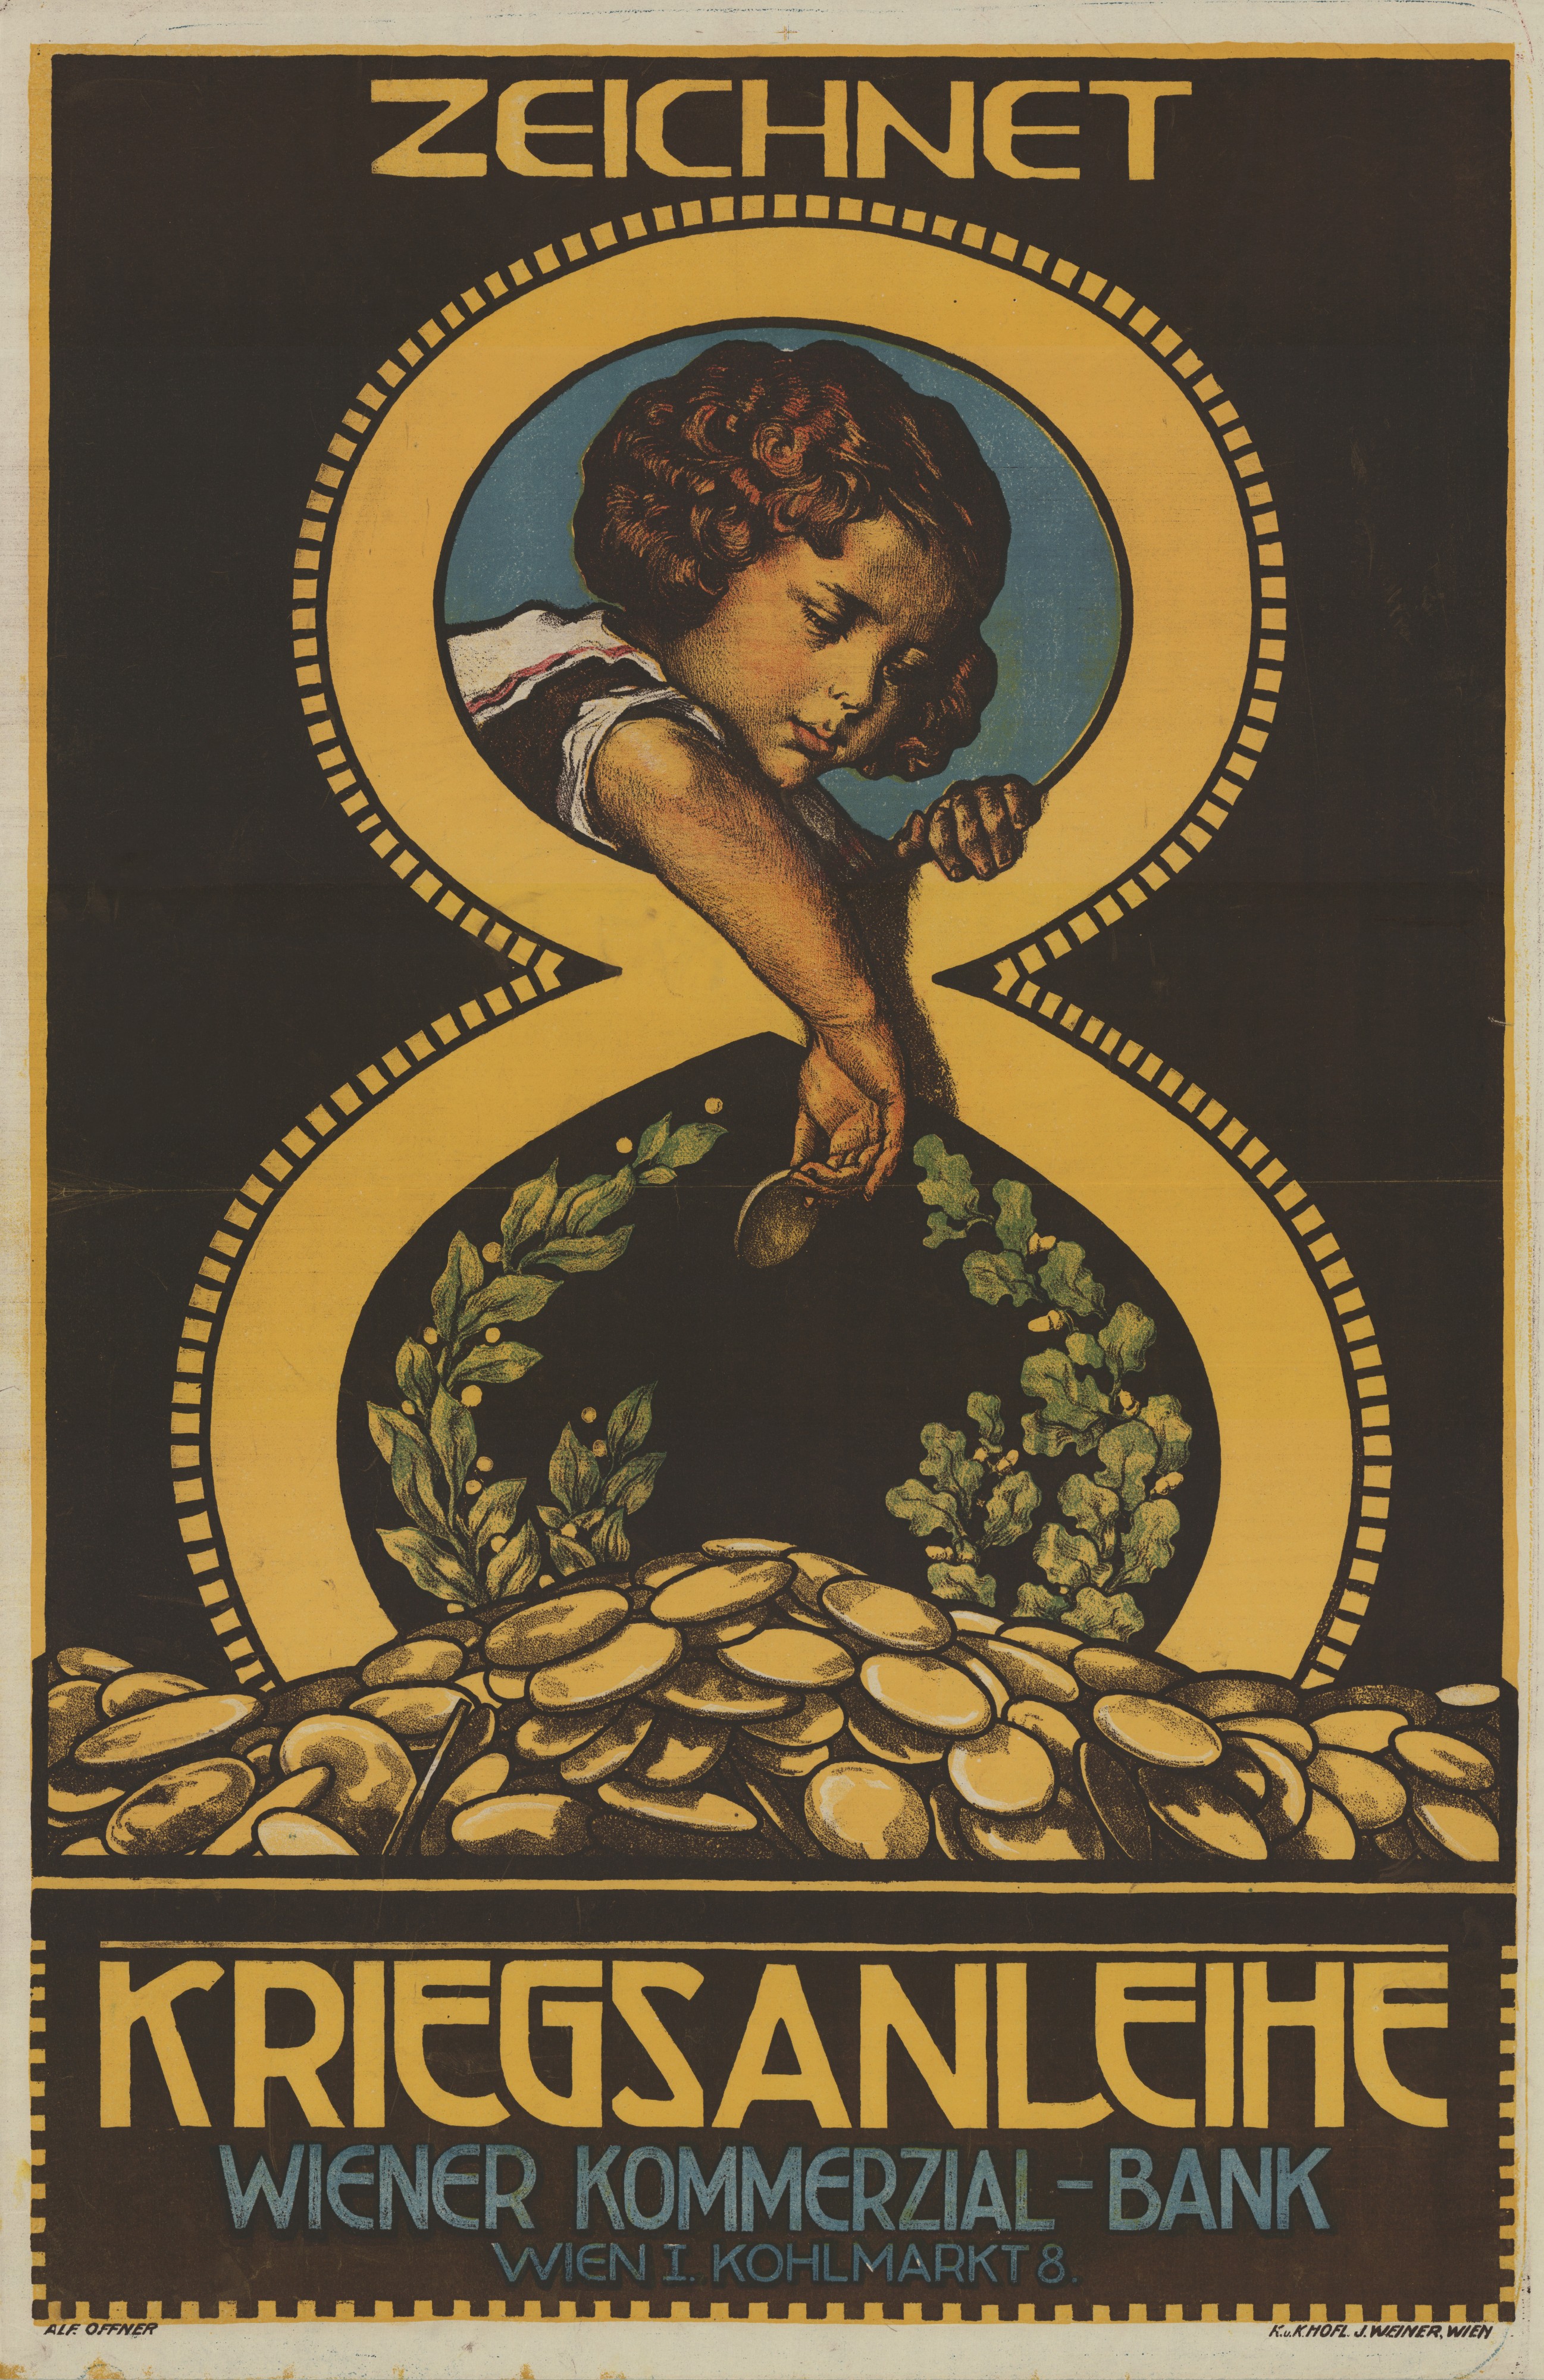 14 Sammlung Eybl Österreich. Alfred Offner (1879-1937). Zeichnet 8. Kriegsanleihe. 1918. 95 x 63 cm. (Slg.Nr. 325)